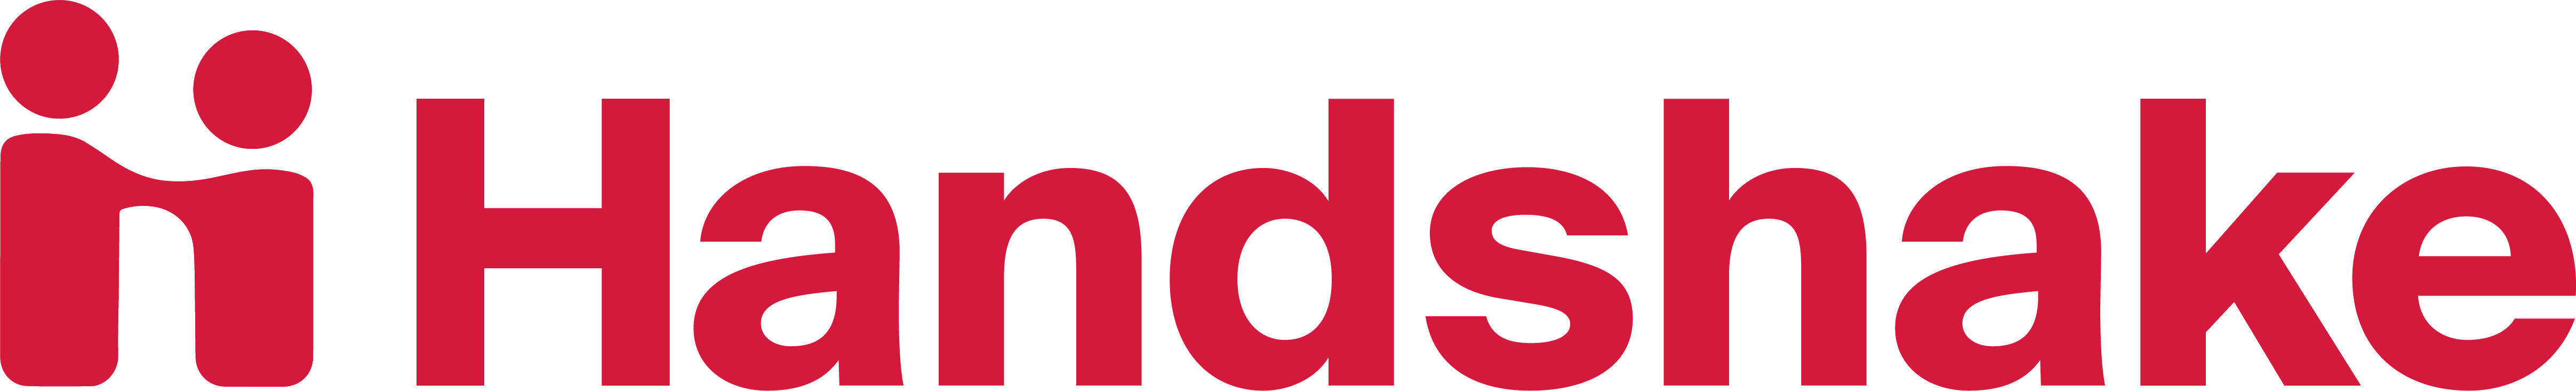 Handshake-logo.png